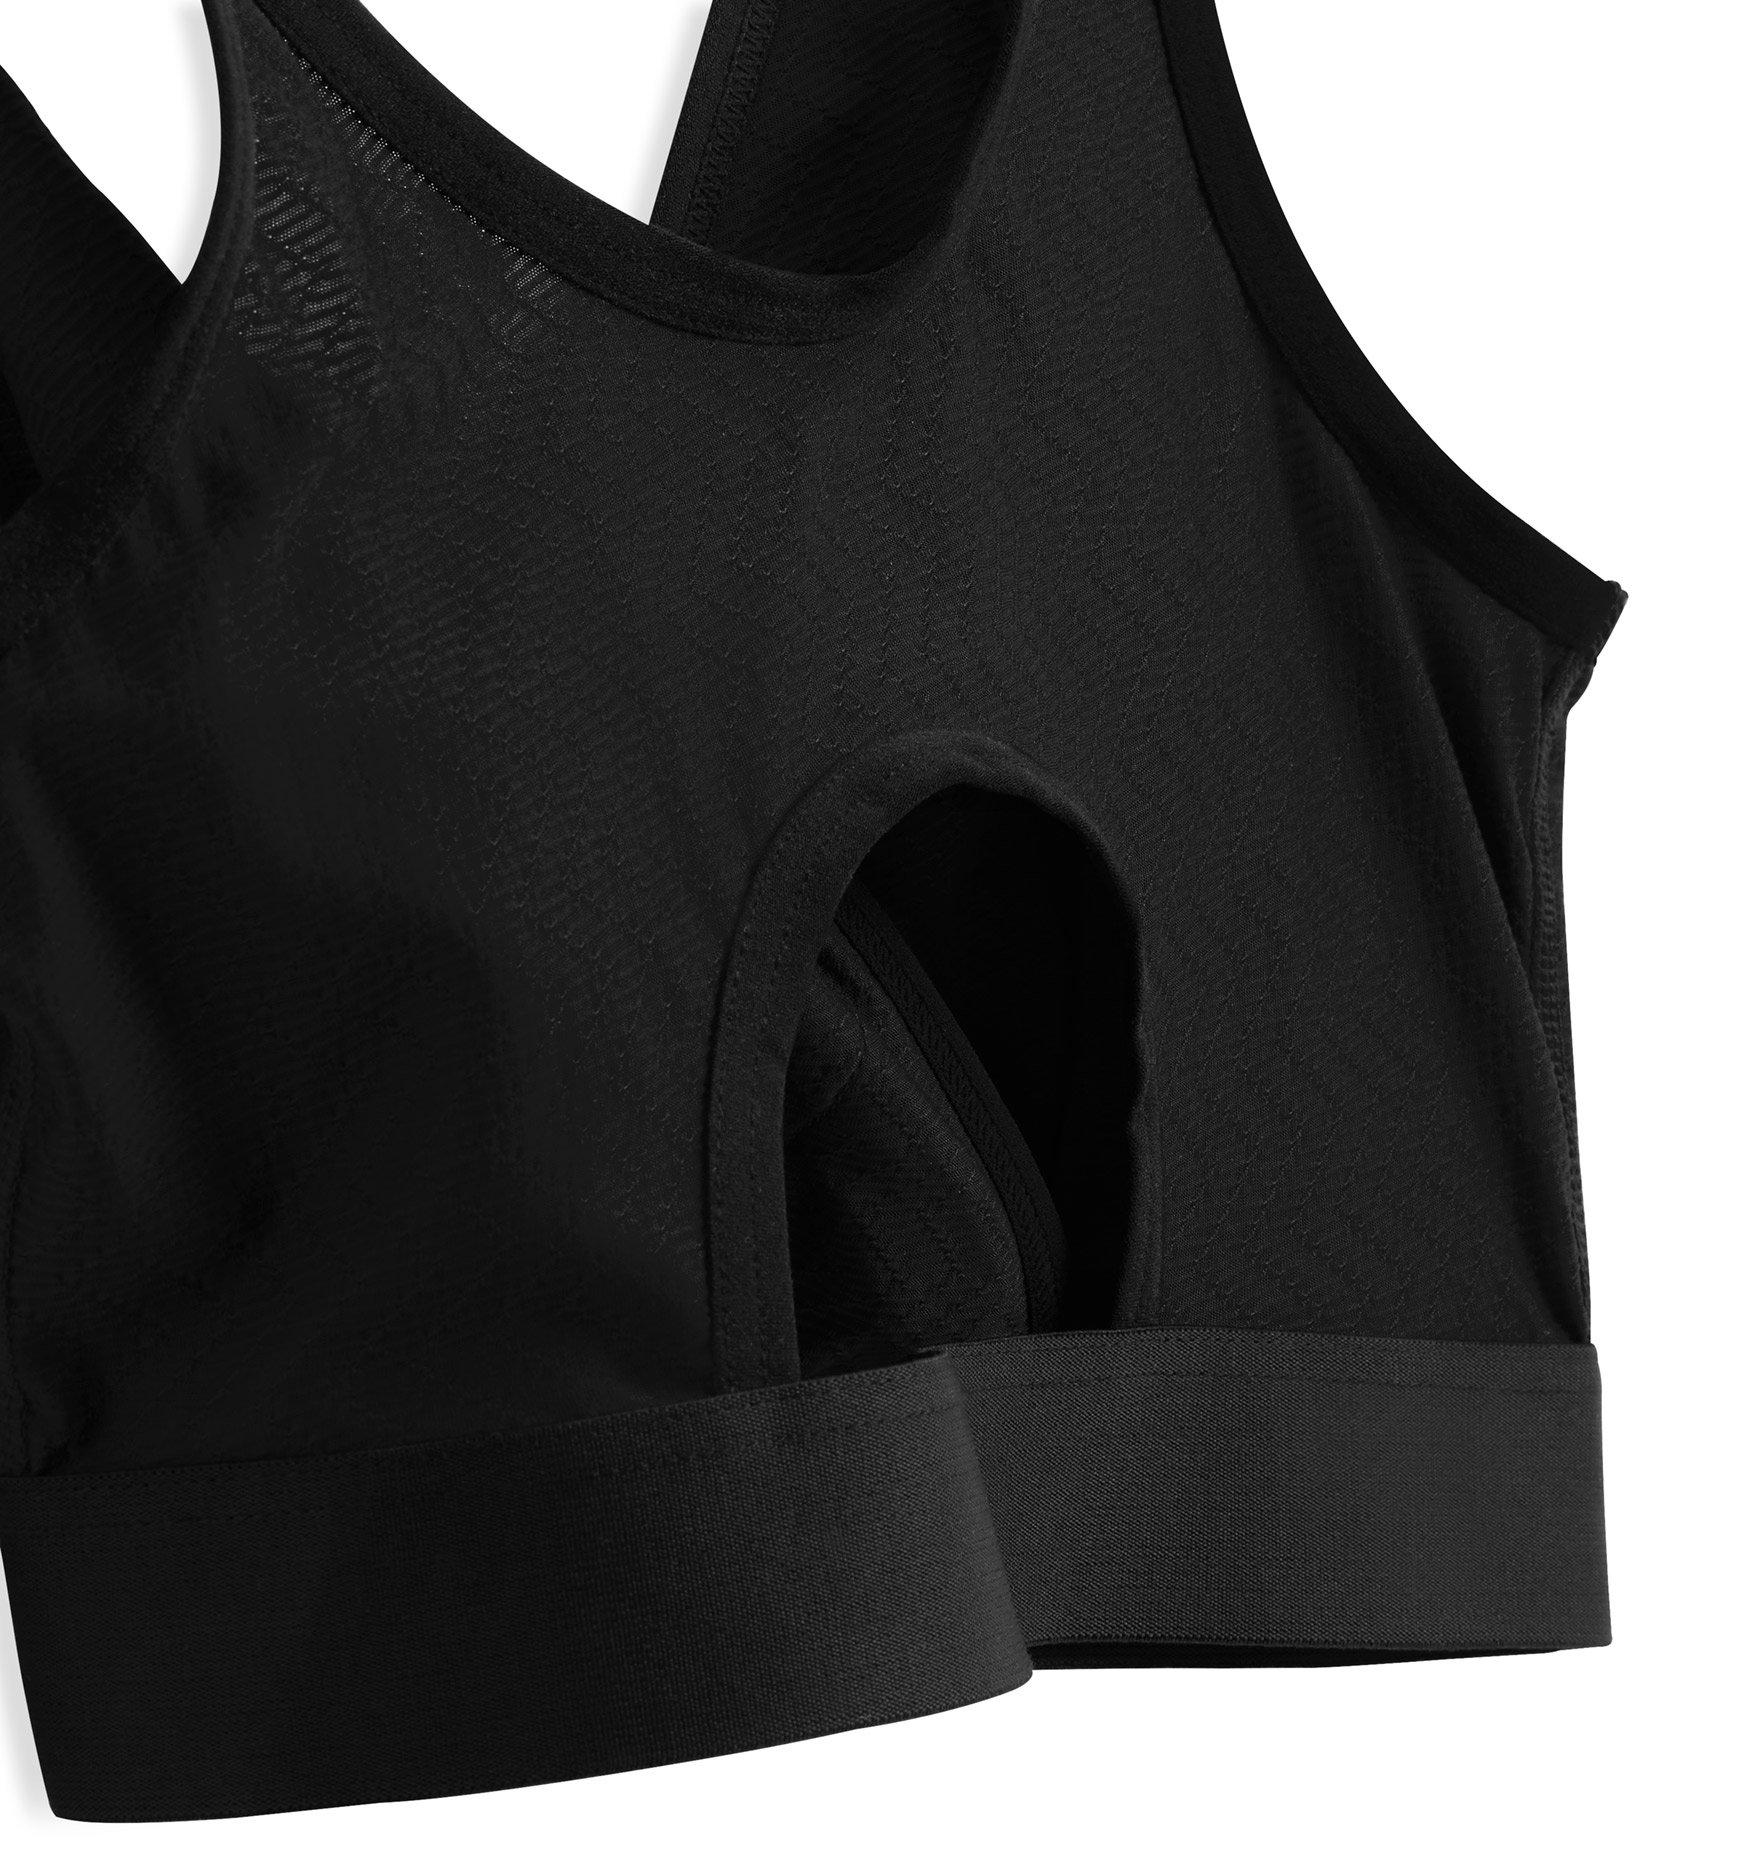 Crossover Front Sports Bra - Black – Luxsea Swimwear